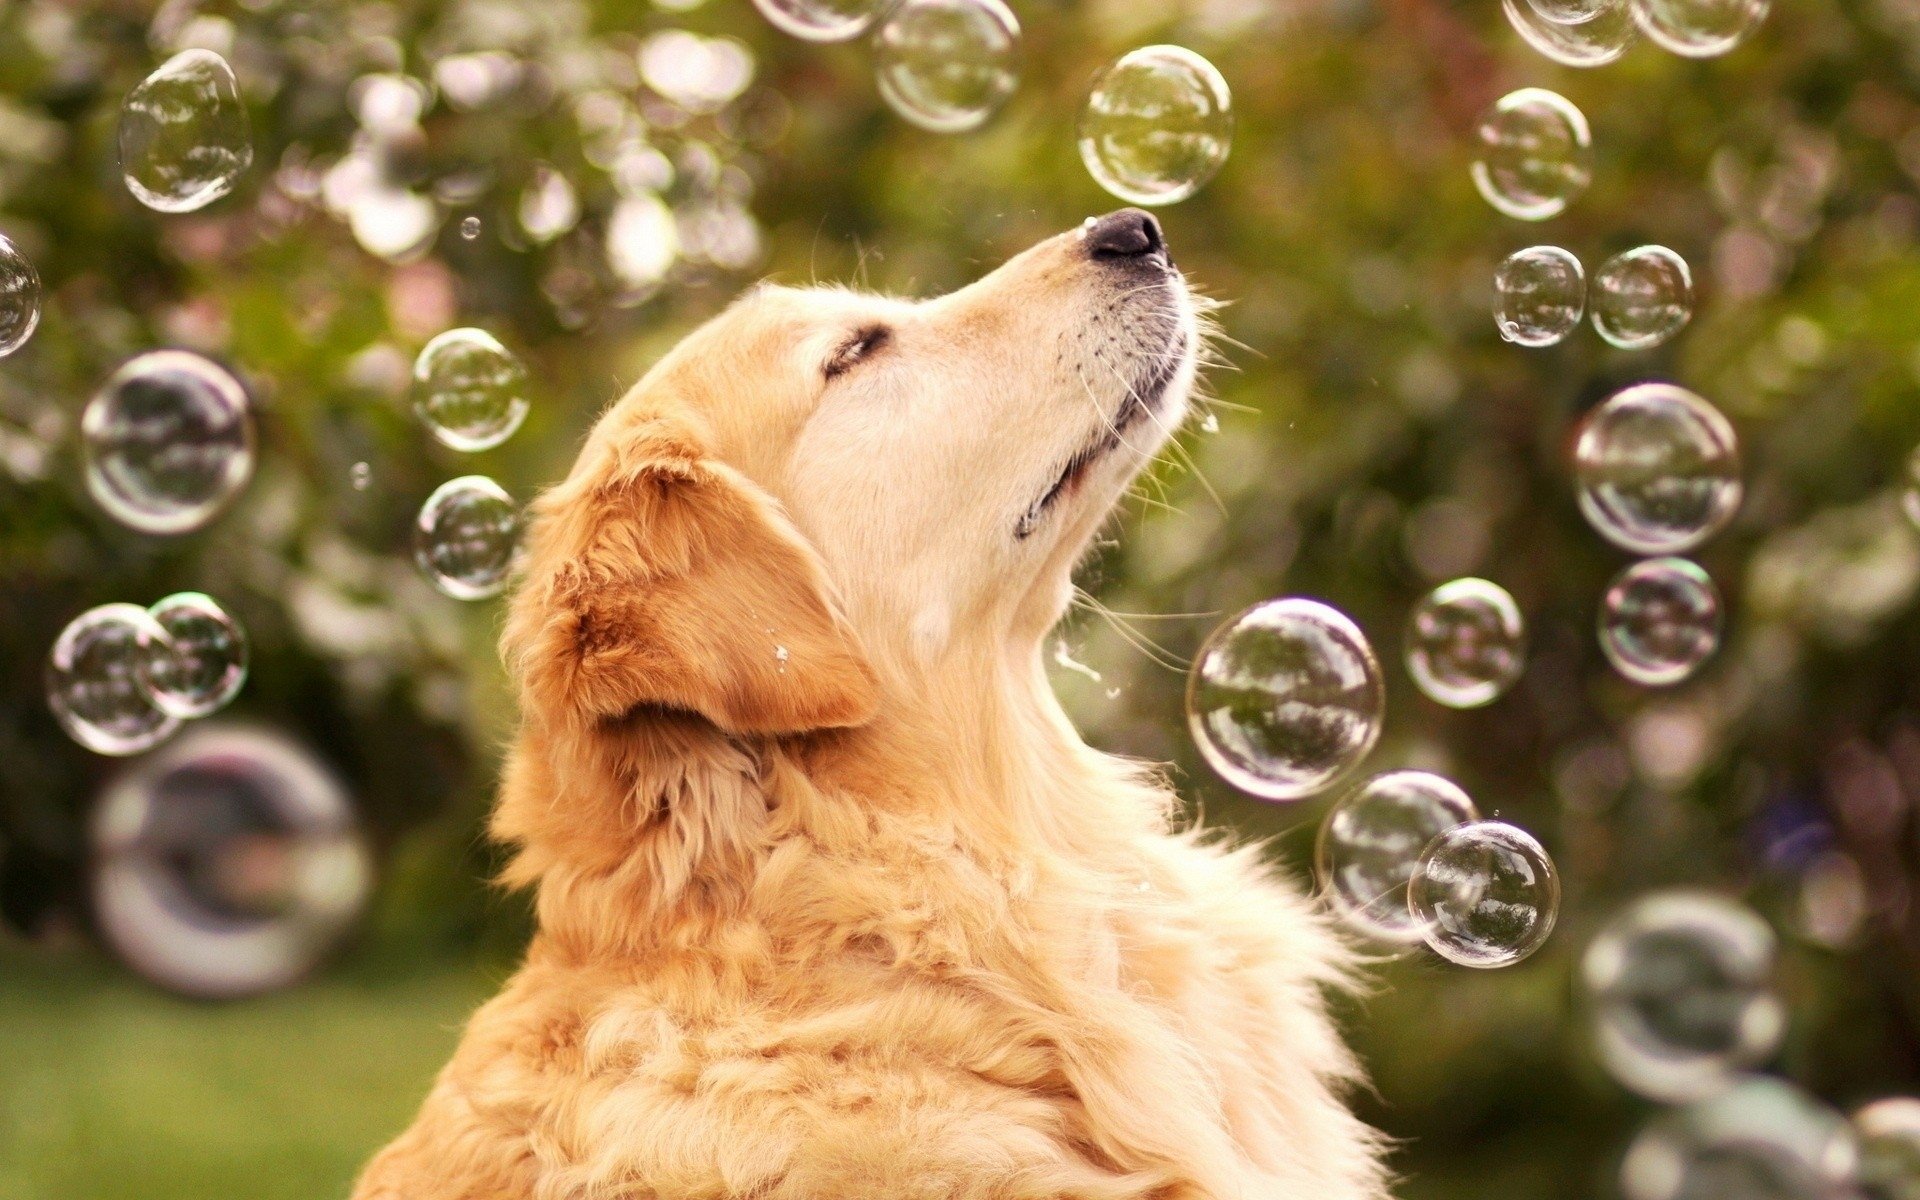 Bộ sưu tập hình nền HD chó Golden Retriever chắc chắn sẽ làm cho màn hình của bạn thêm bắt mắt và ấm cúng hơn. Hãy để hình ảnh đáng yêu và thân thiện nơi những chú chó Golden Retriever trở thành hình nền cho điện thoại hay máy tính của bạn.